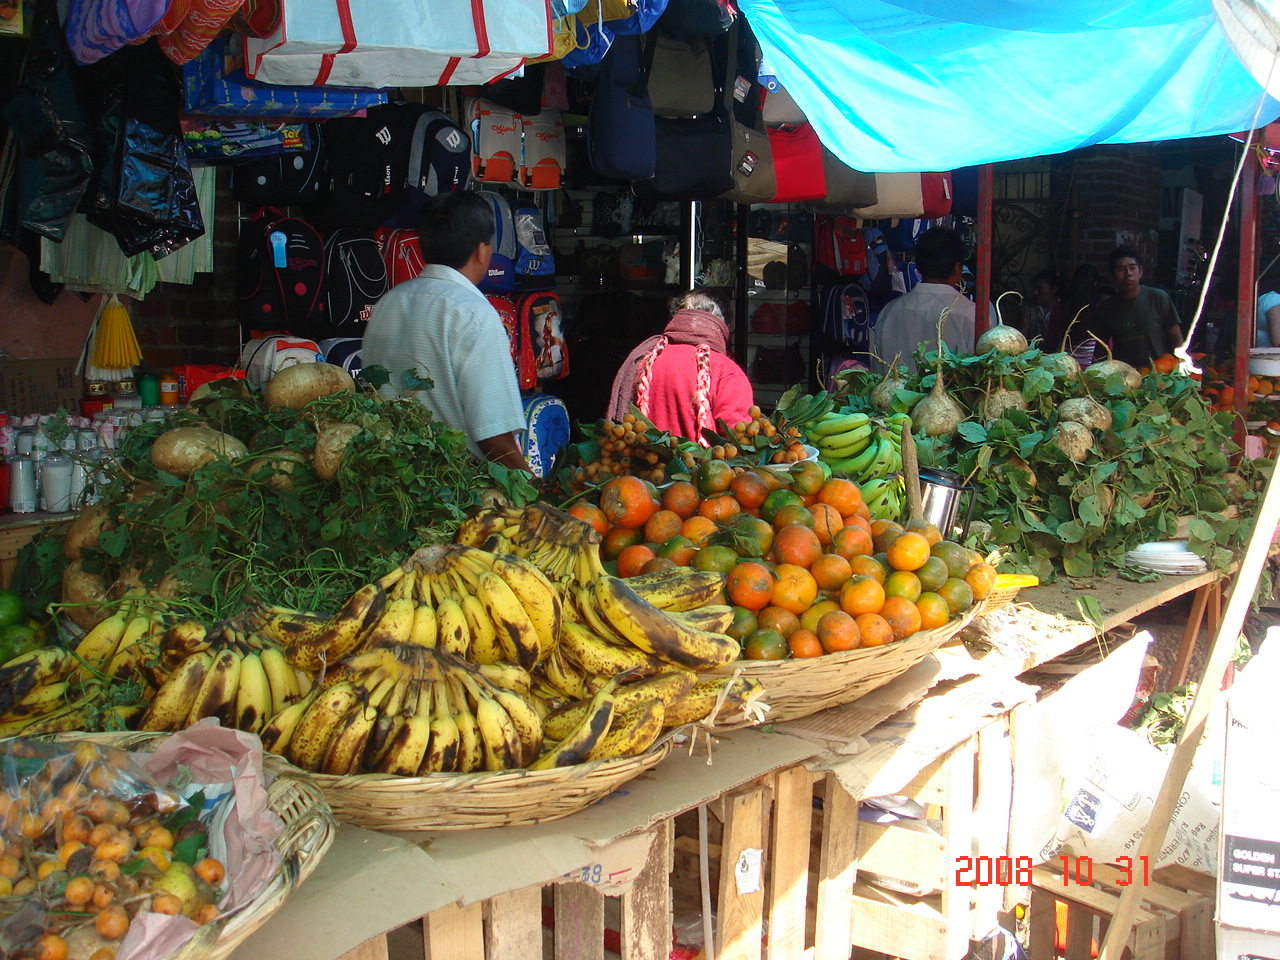 A market in Oaxaca